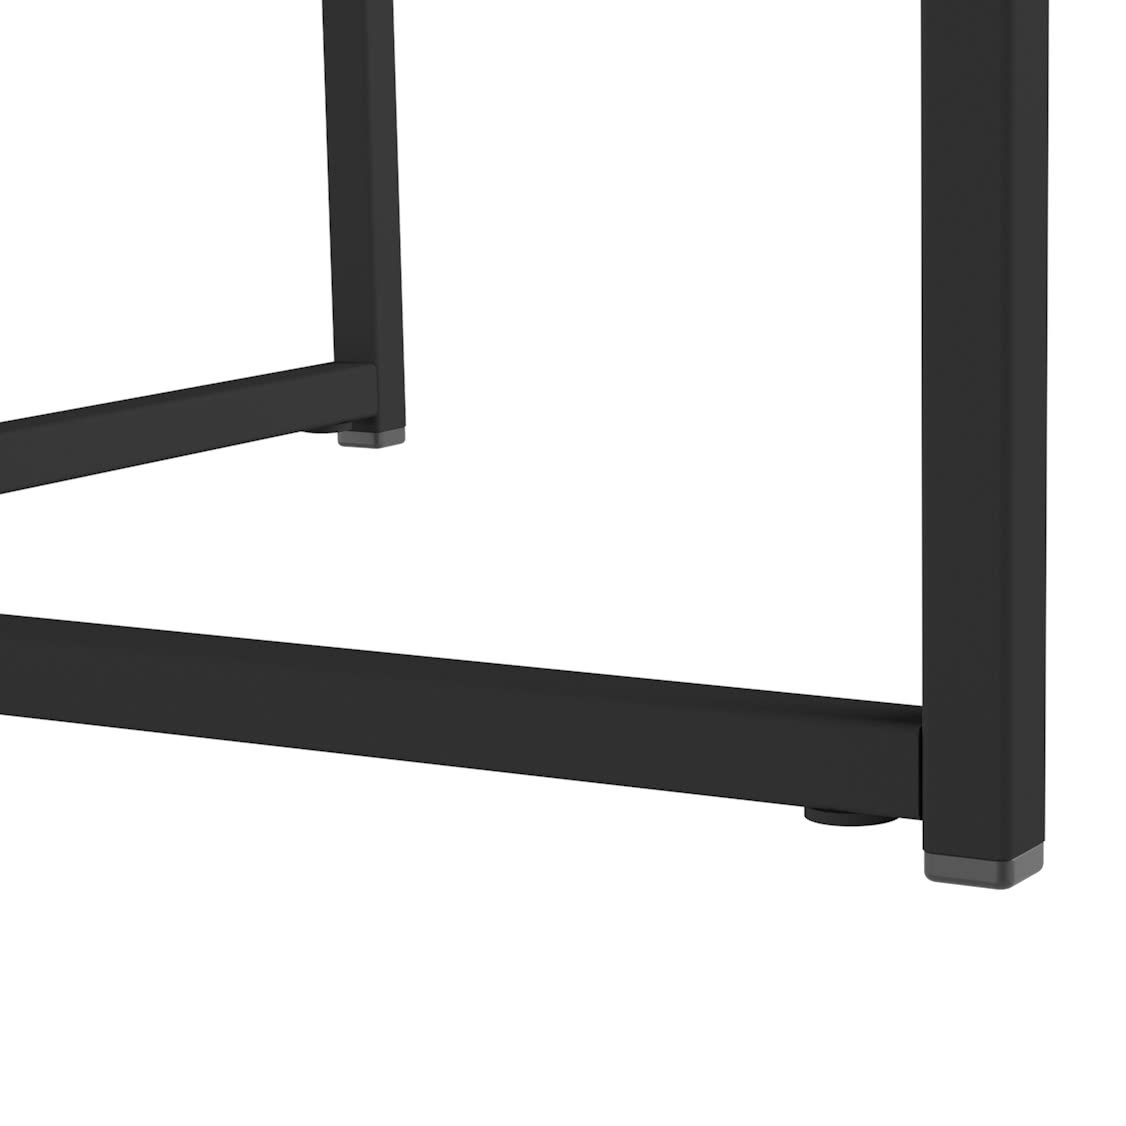 Купить стол Мебелик Стол журнальный Мебелик Стефан, черный мрамор/титан черный мрамор/титан дешево на официальном сайте